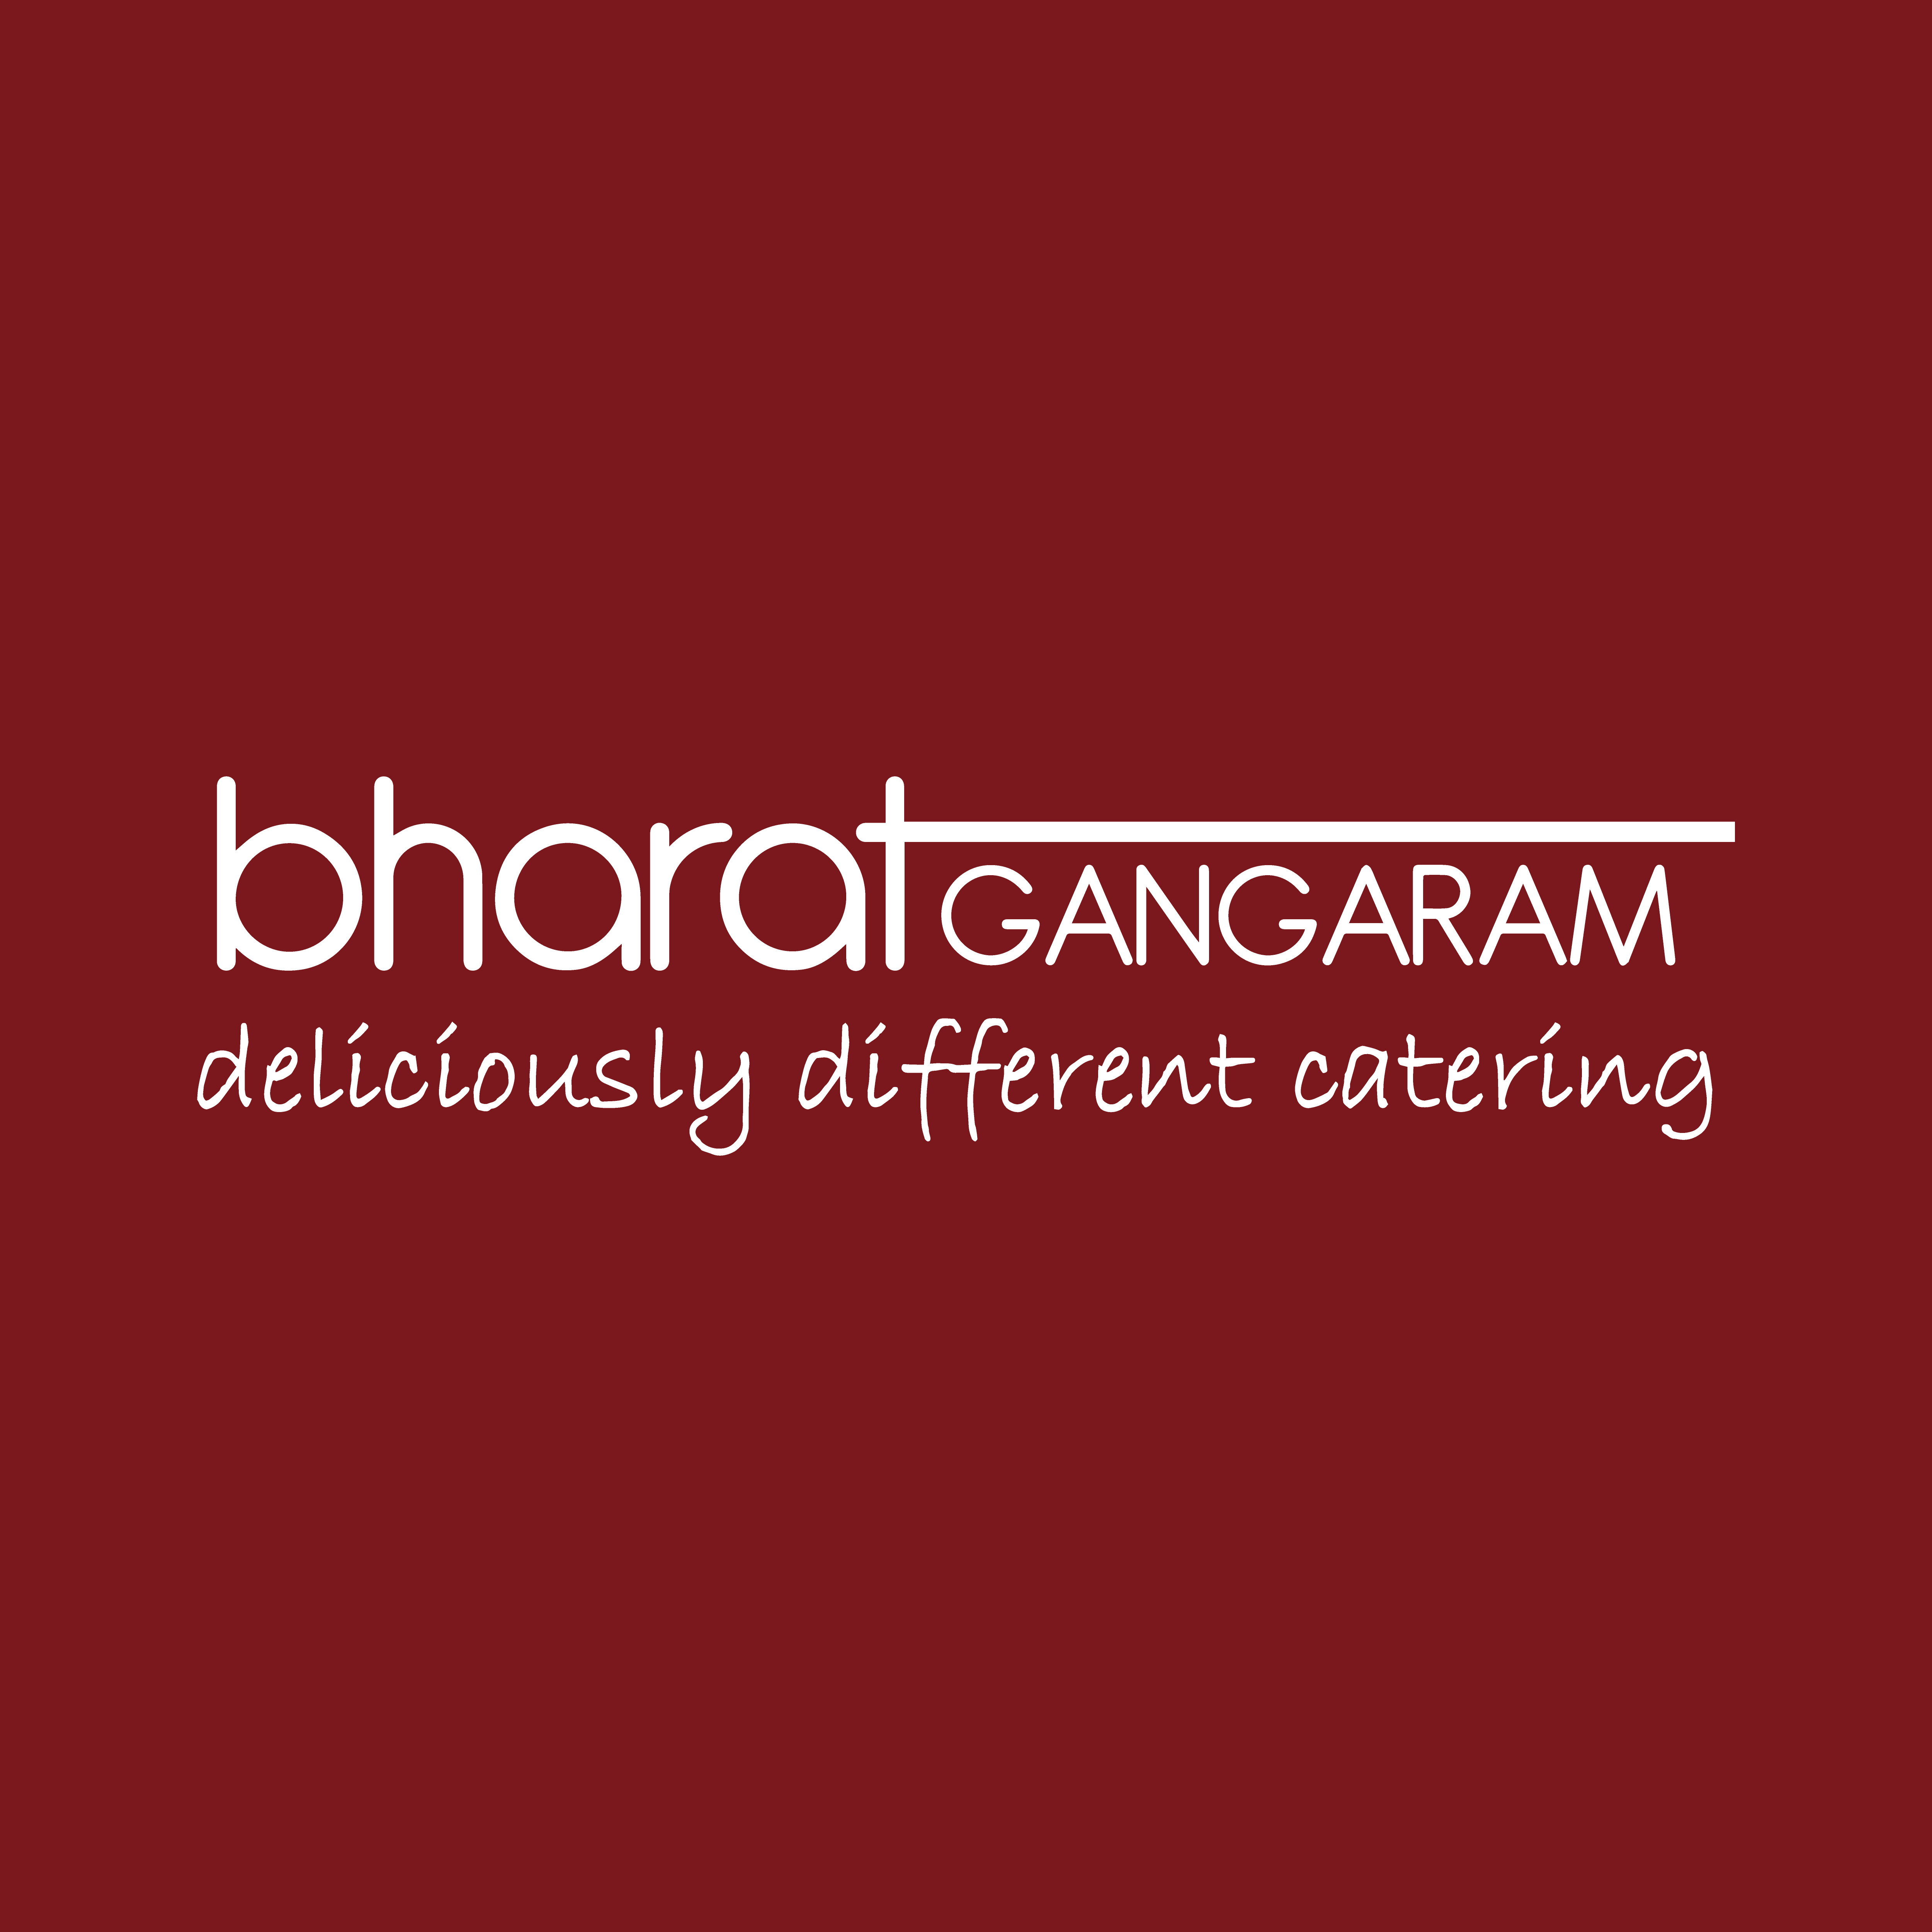 Bharat Gangaram